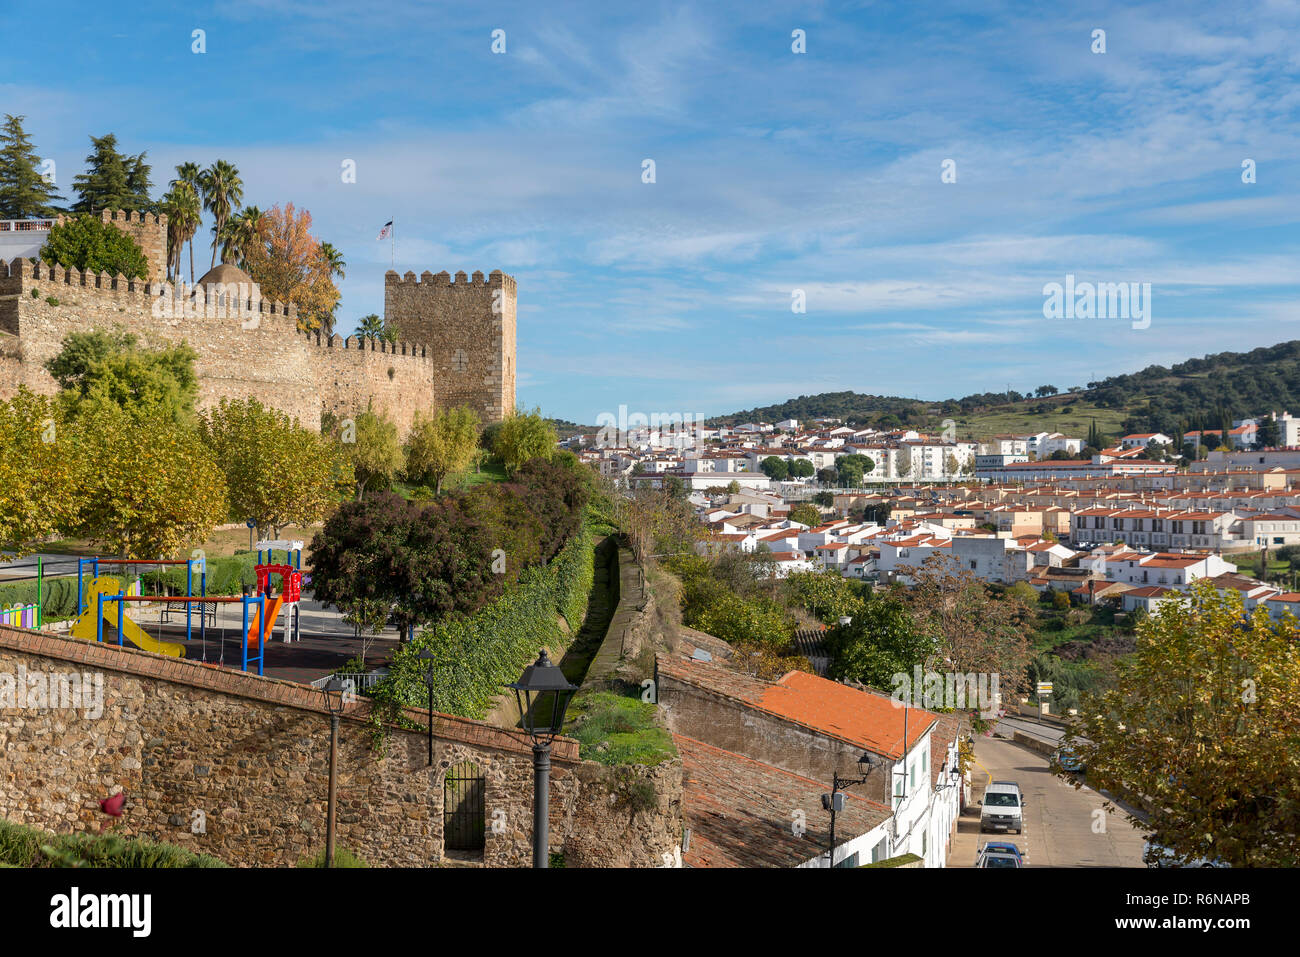 JEREZ DE LOS CABALLEROS, BADAJOZ, Spagna - 24 novembre 2018: mura del XIII secolo di origine templare Foto Stock